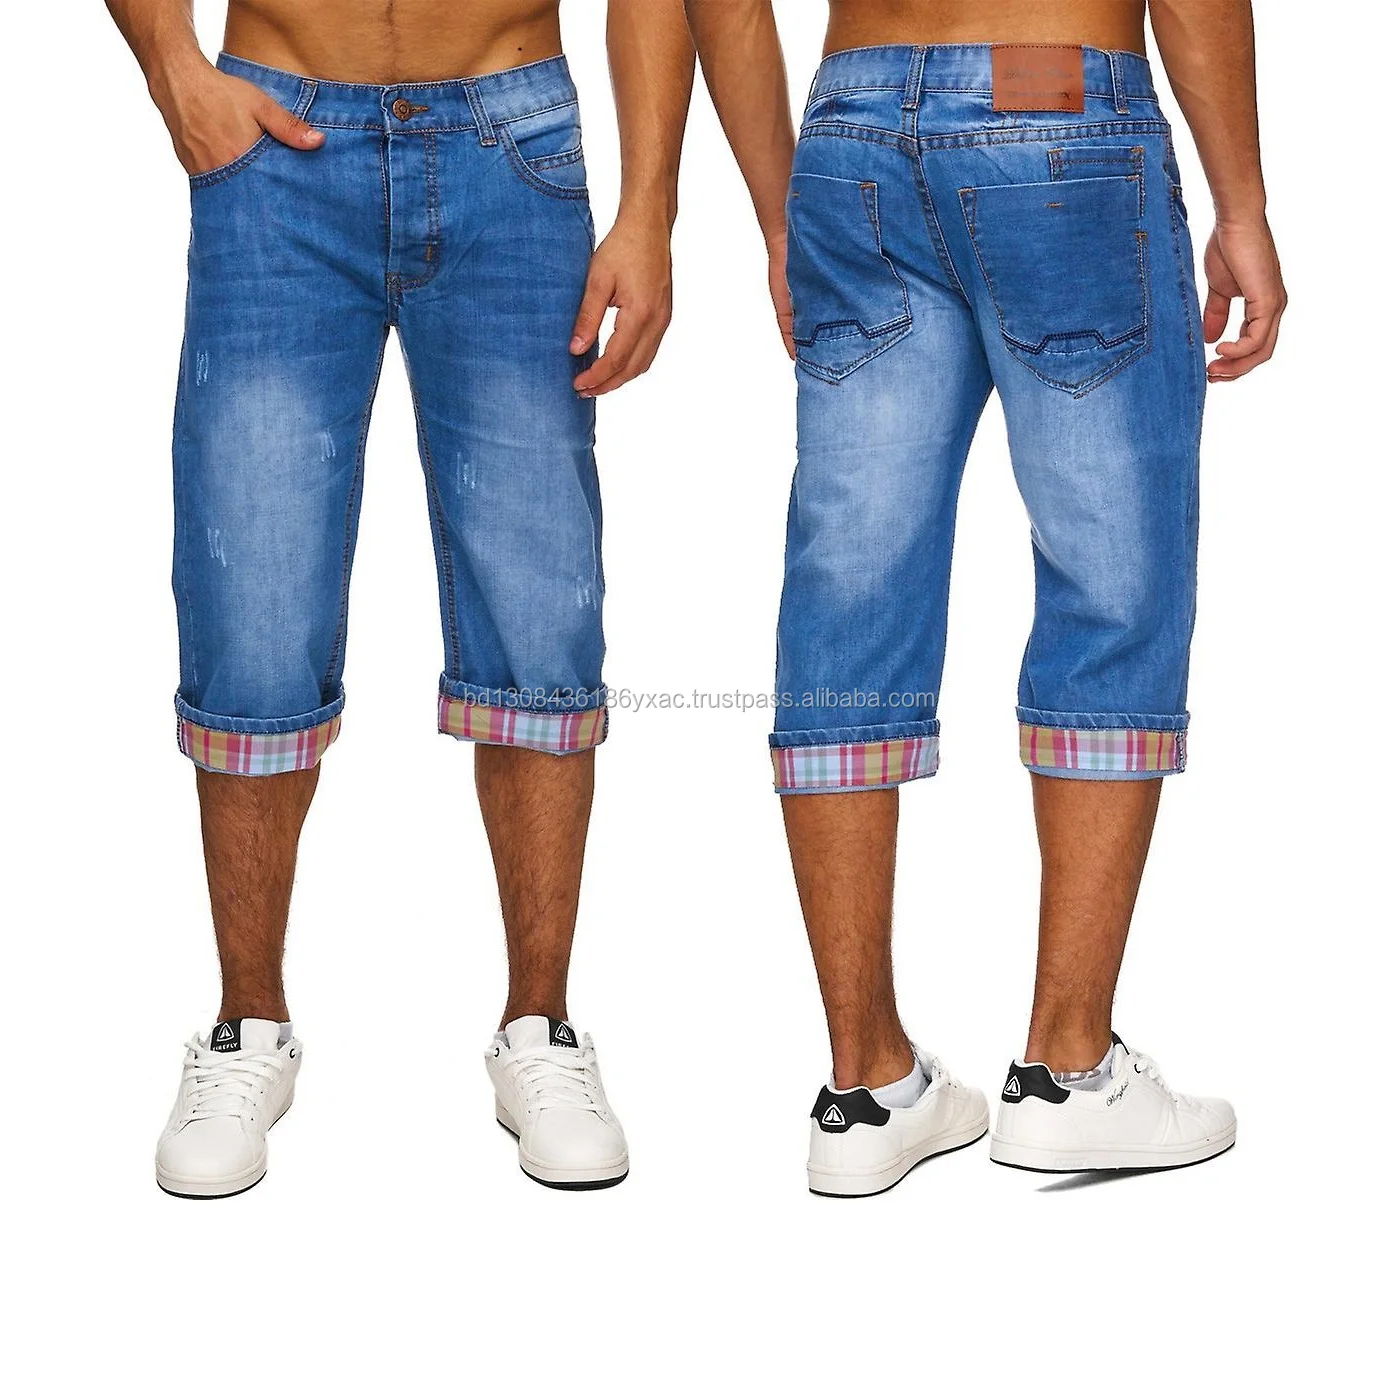 3/4 Length Denim Jeans - Size 30 - Vintage Lover